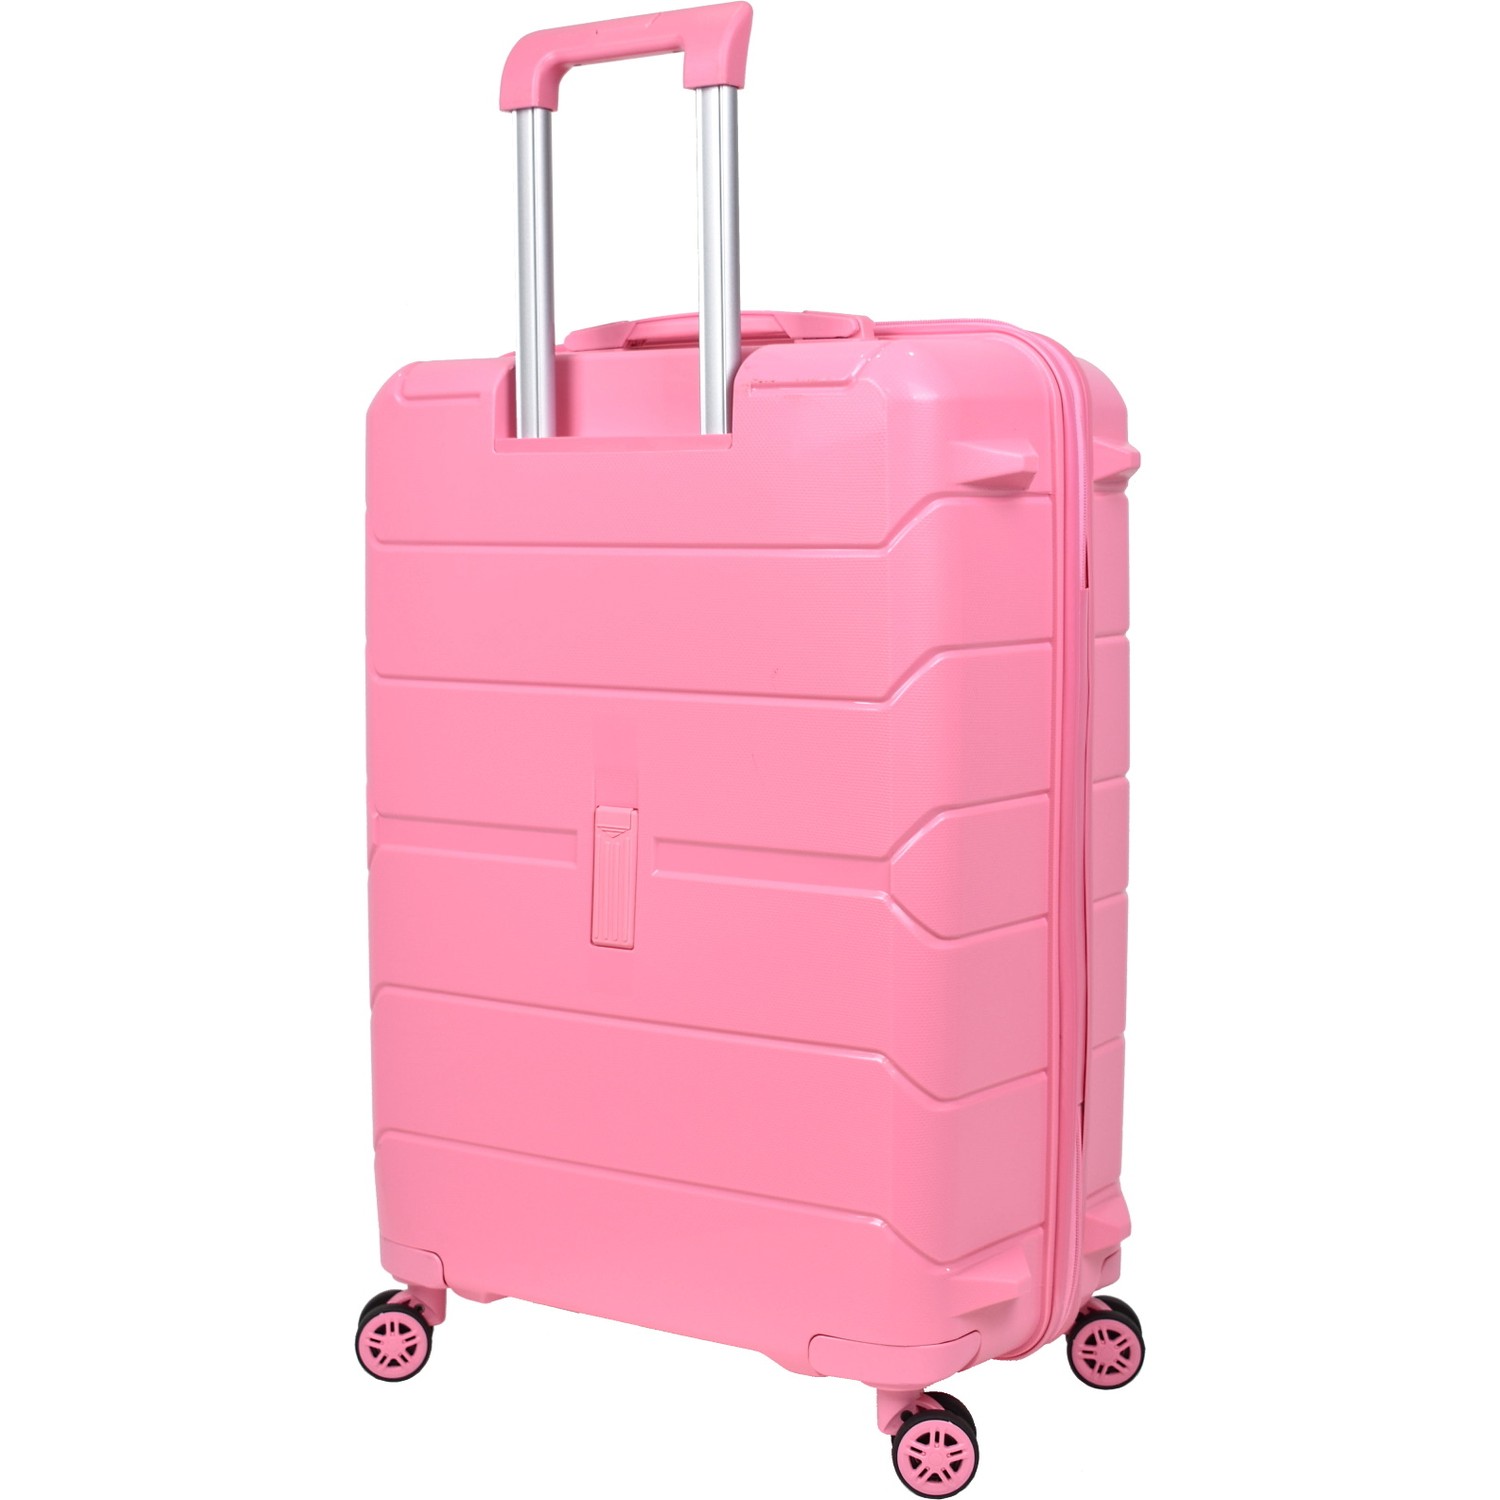 Средний чемодан из полипропилена MCS V366 M PINK! Для 18 кг! - 3